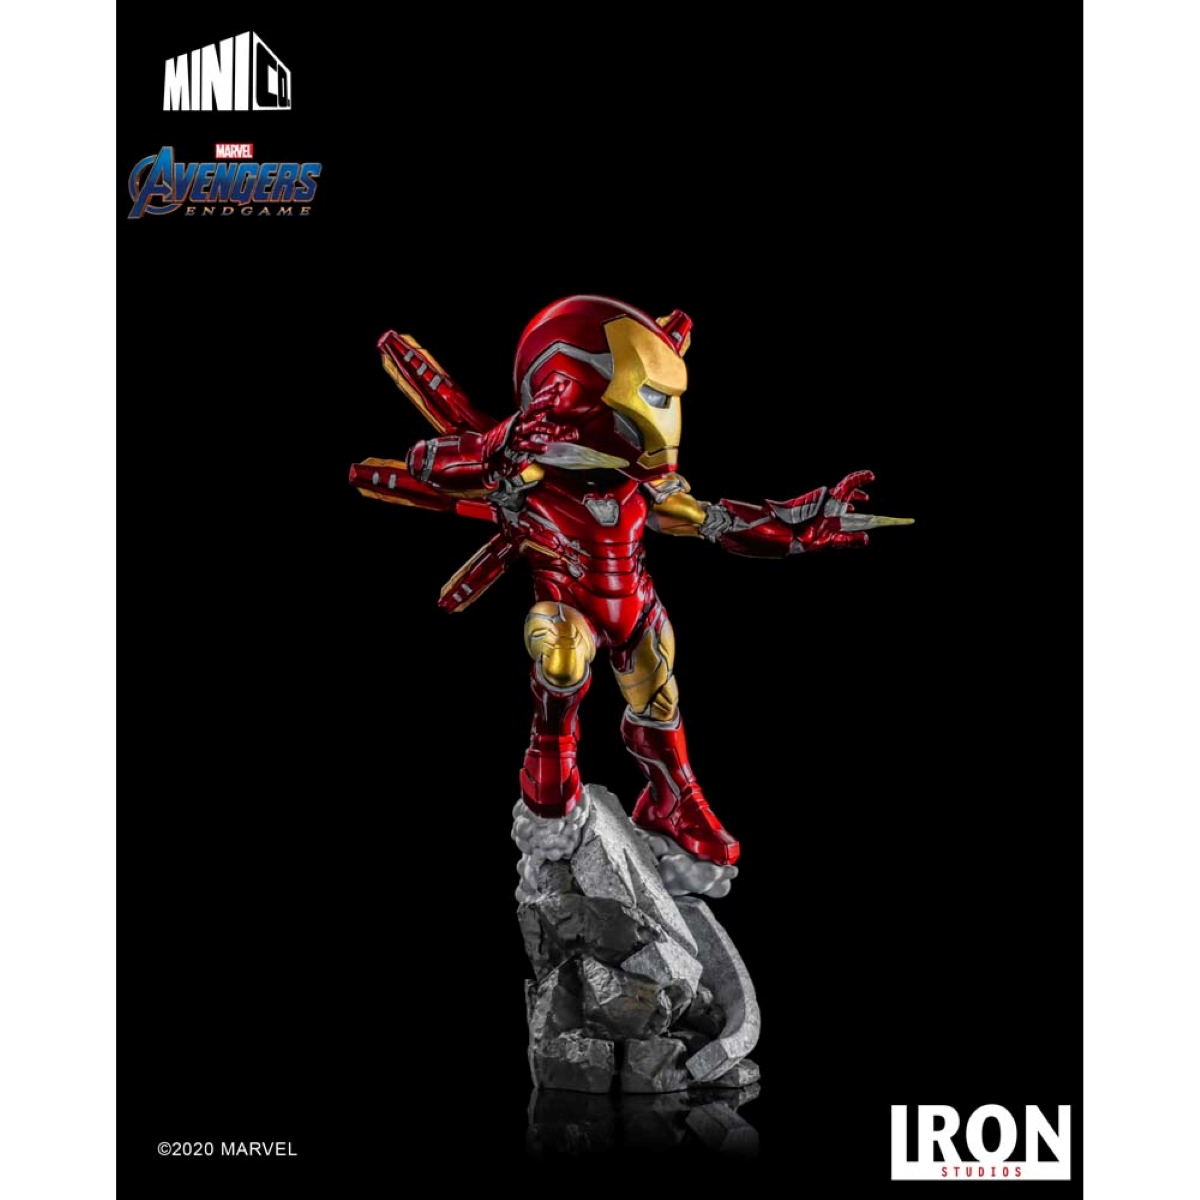 STUDIOS Avengers: Studios Endgame Minico IRON Iron Figur & Iron figur Man -